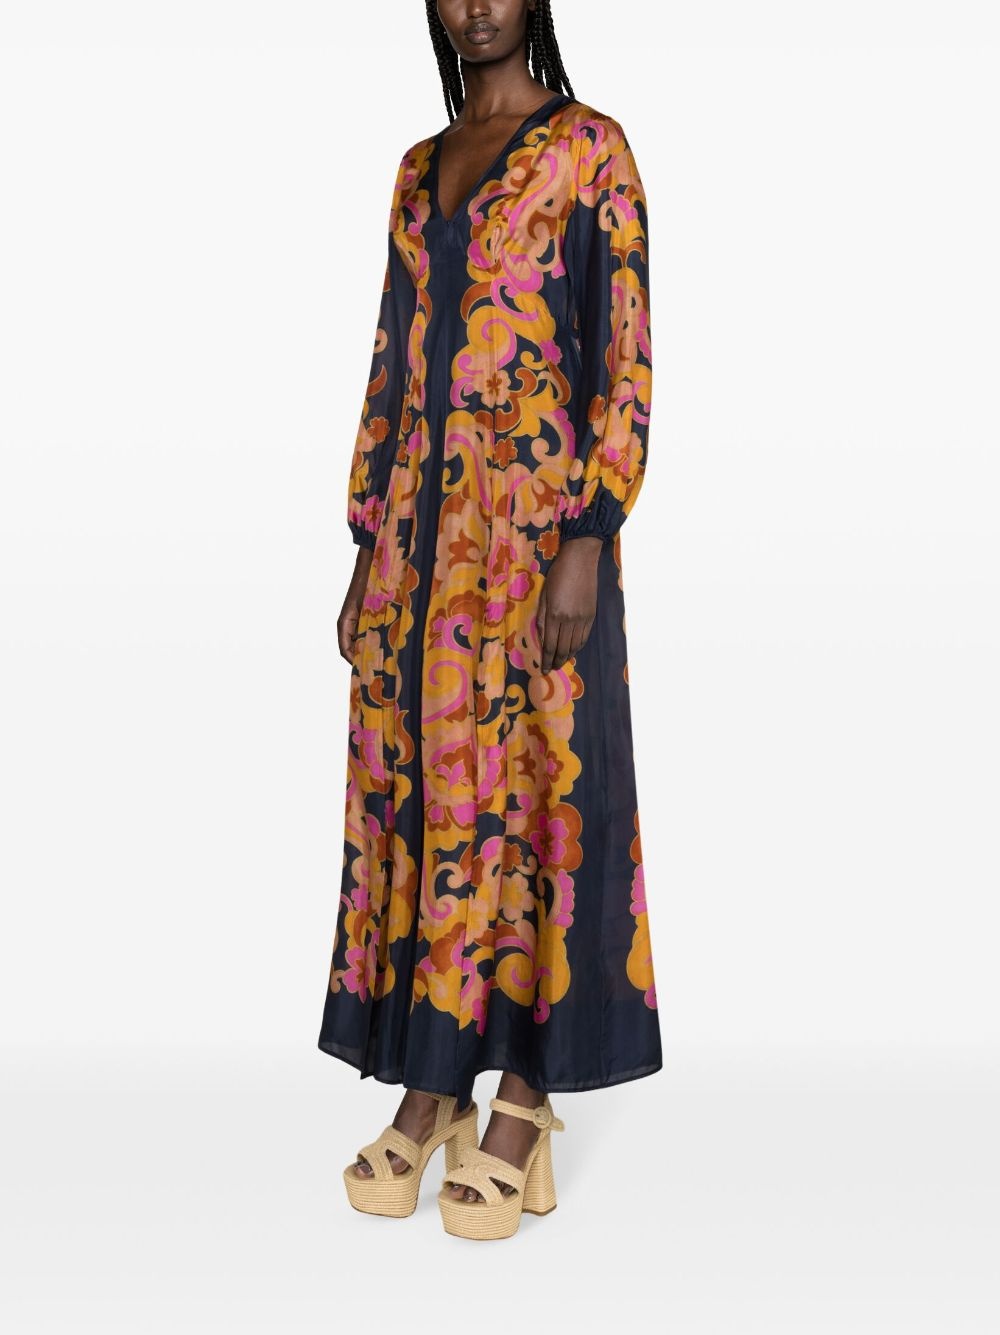 Acadian silk maxi dress - 3